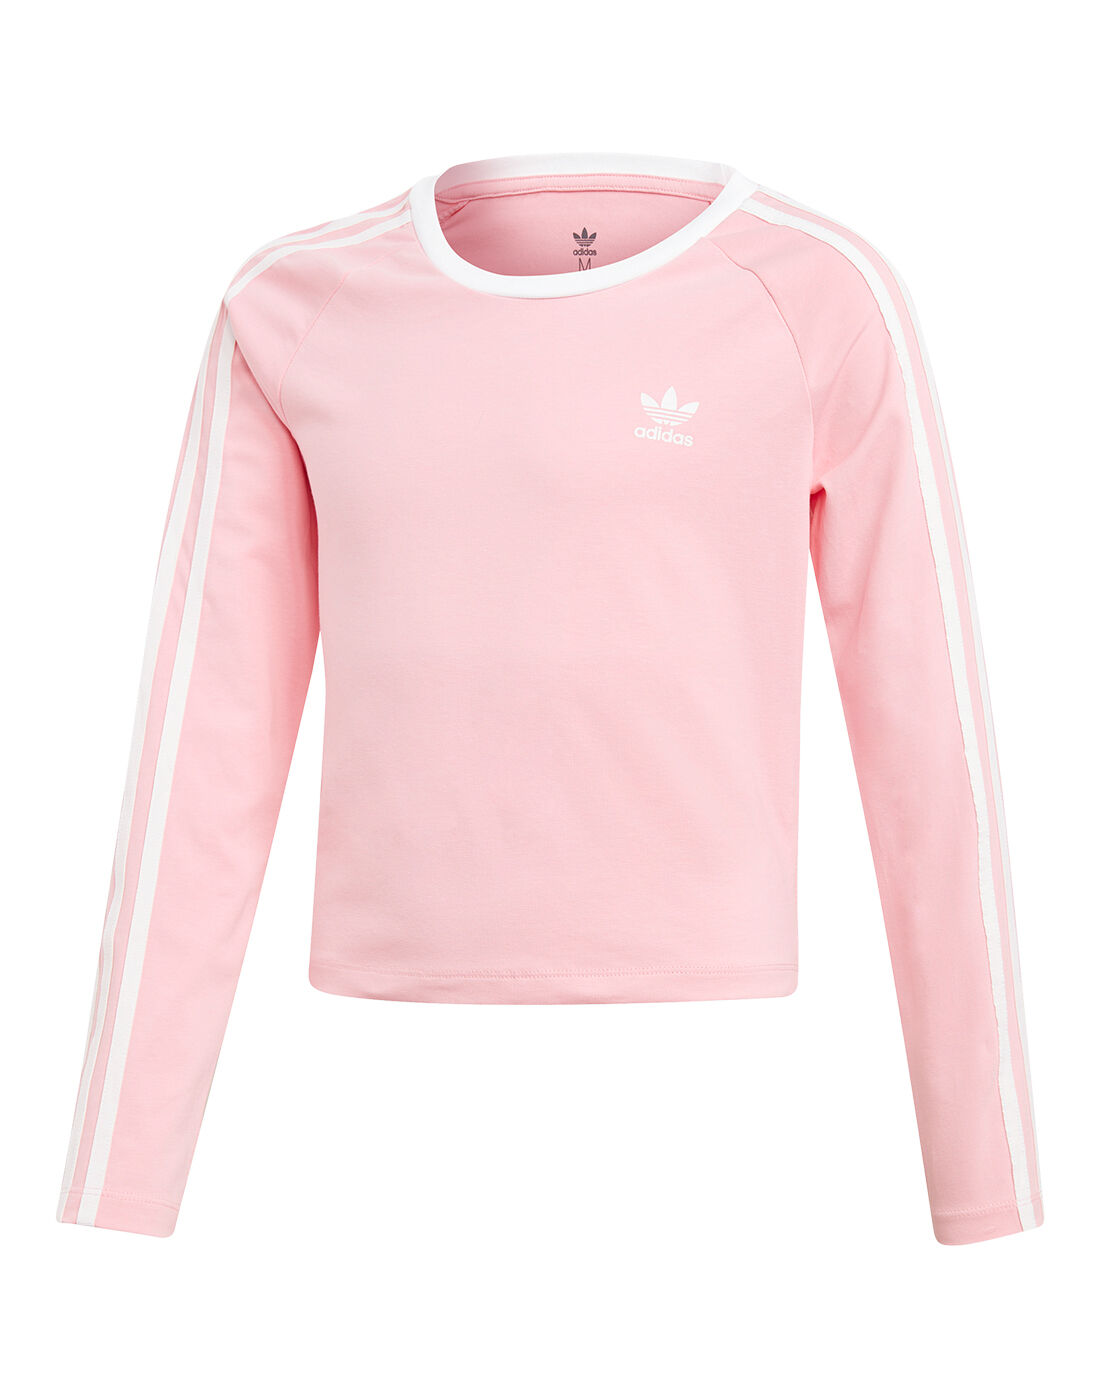 girls pink adidas shirt